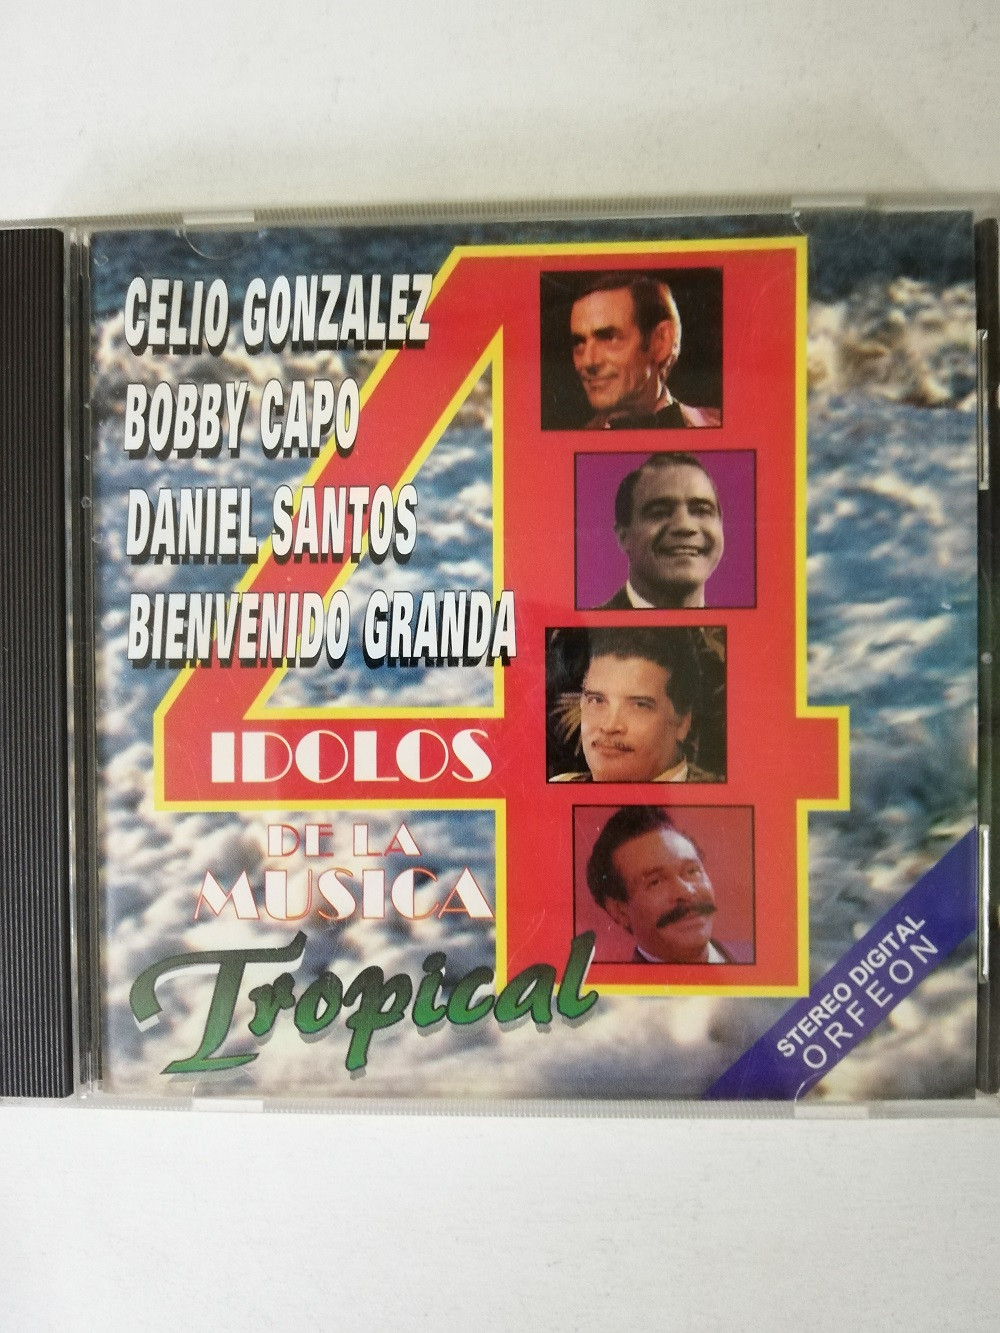 Imagen CD CELIO GONZALEZ/BOBBY CAPO/DANIEL SANTOS/BIENVENIDO GRANDA - 4 IDOLOS DE LA MÚSICA TROPICAL  1